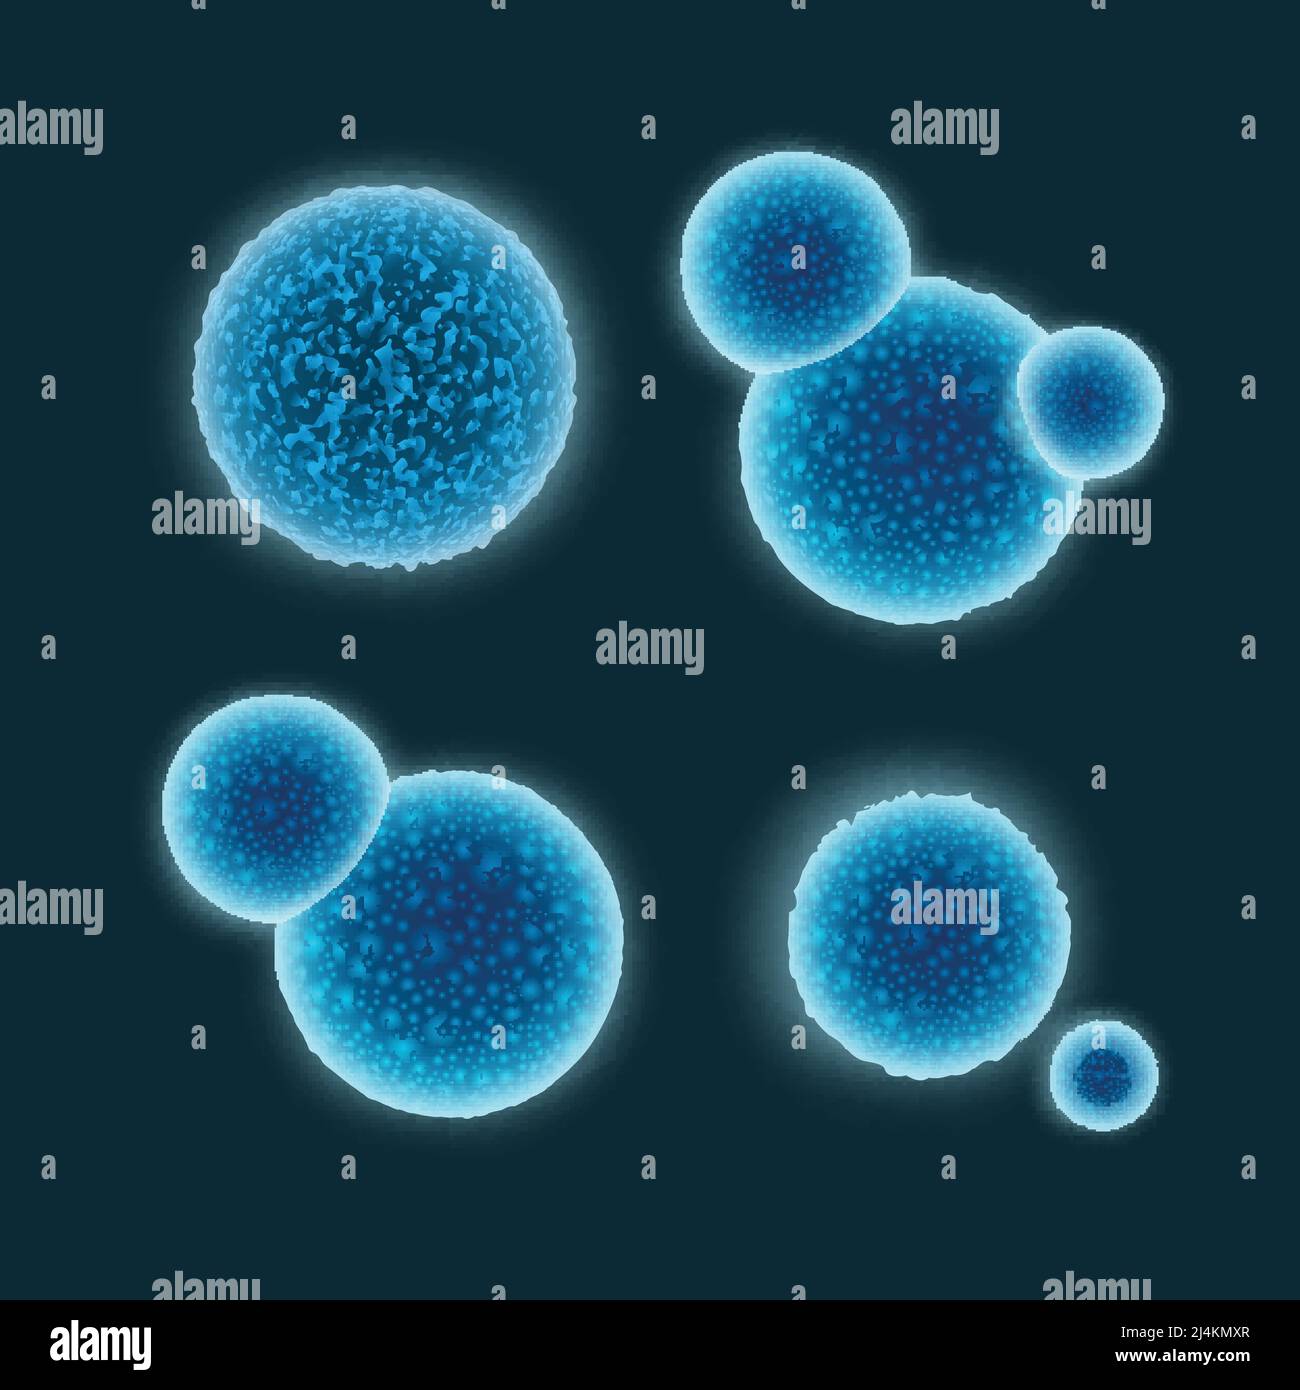 Vektor-Set von abstrakten blauen Kokken Bakterien isoliert auf dunkel Hintergrund Stock Vektor